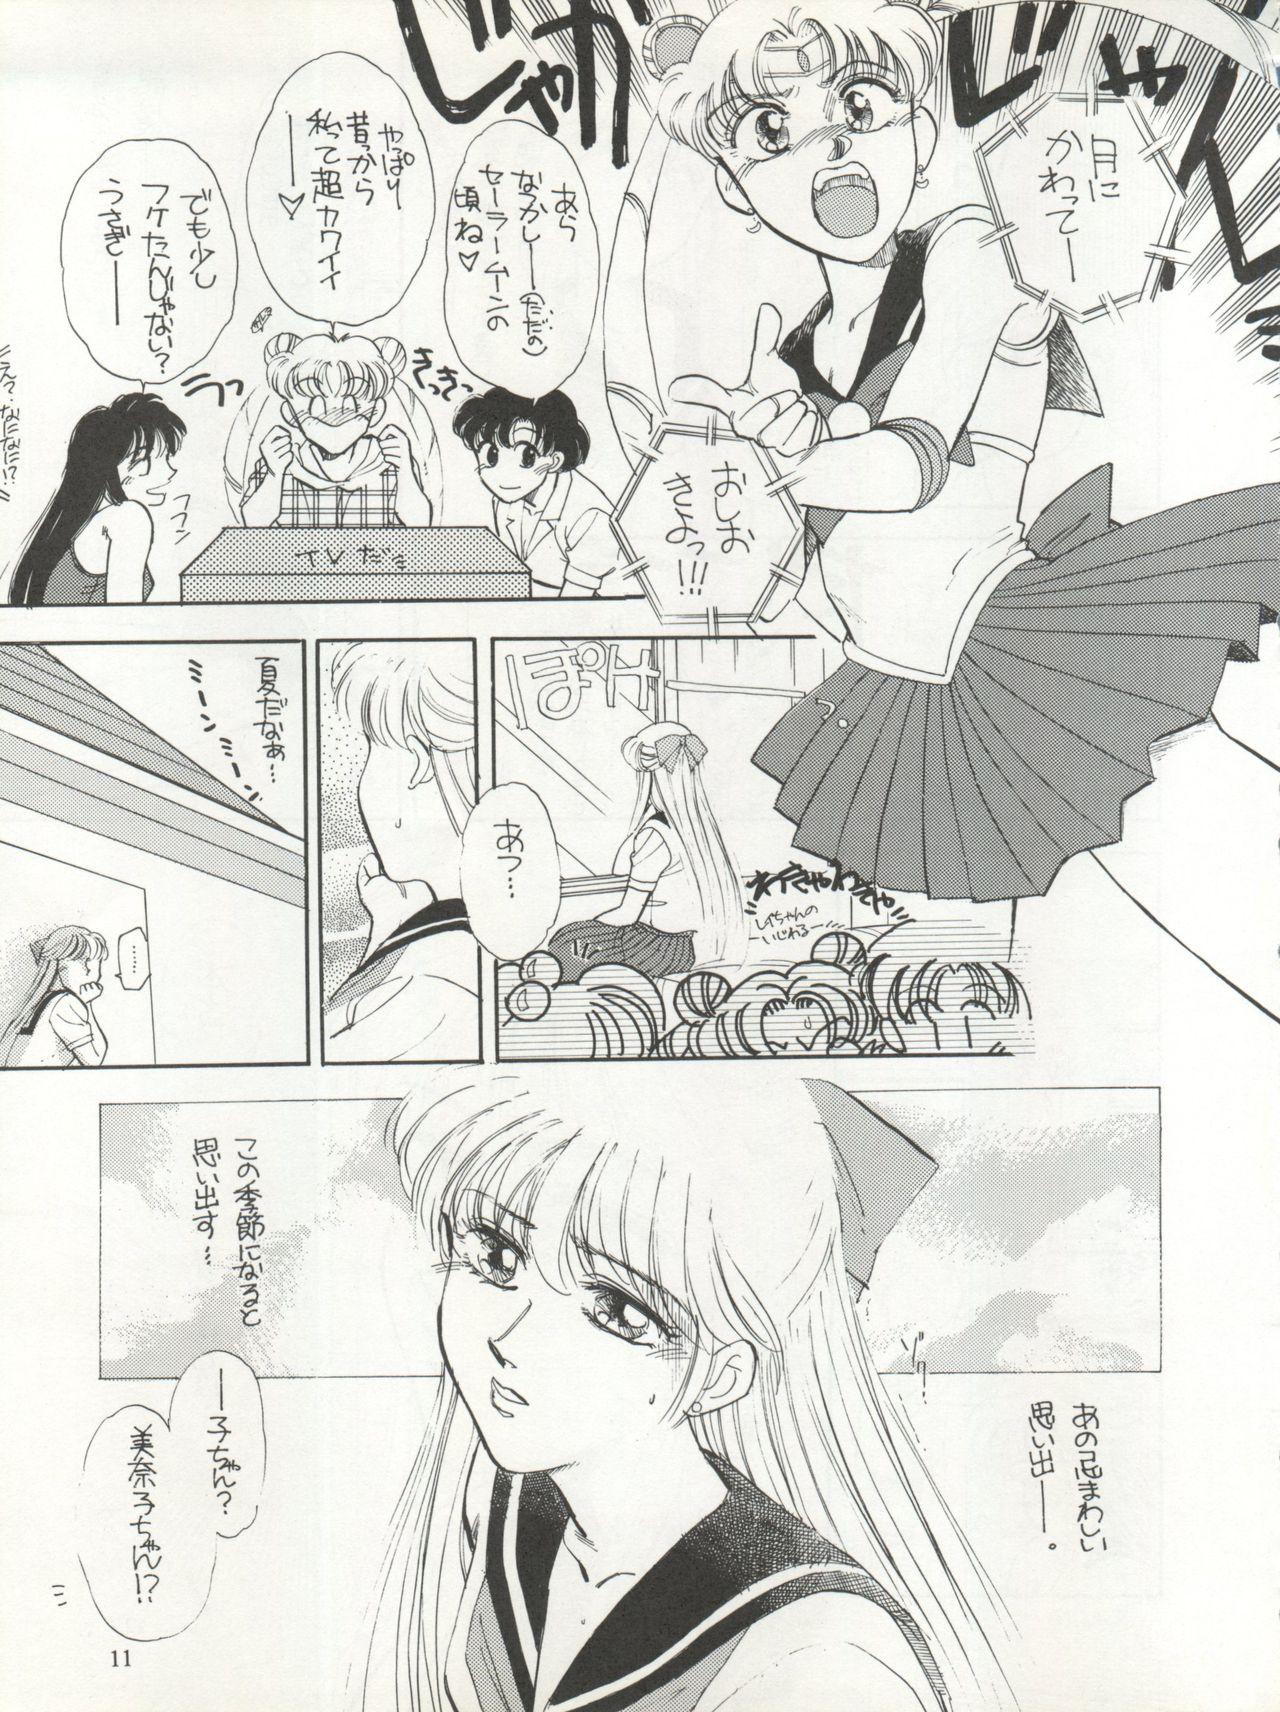 Thick Sekai Seifuku Sailor Fuku 5 - Sailor moon Shemales - Page 9